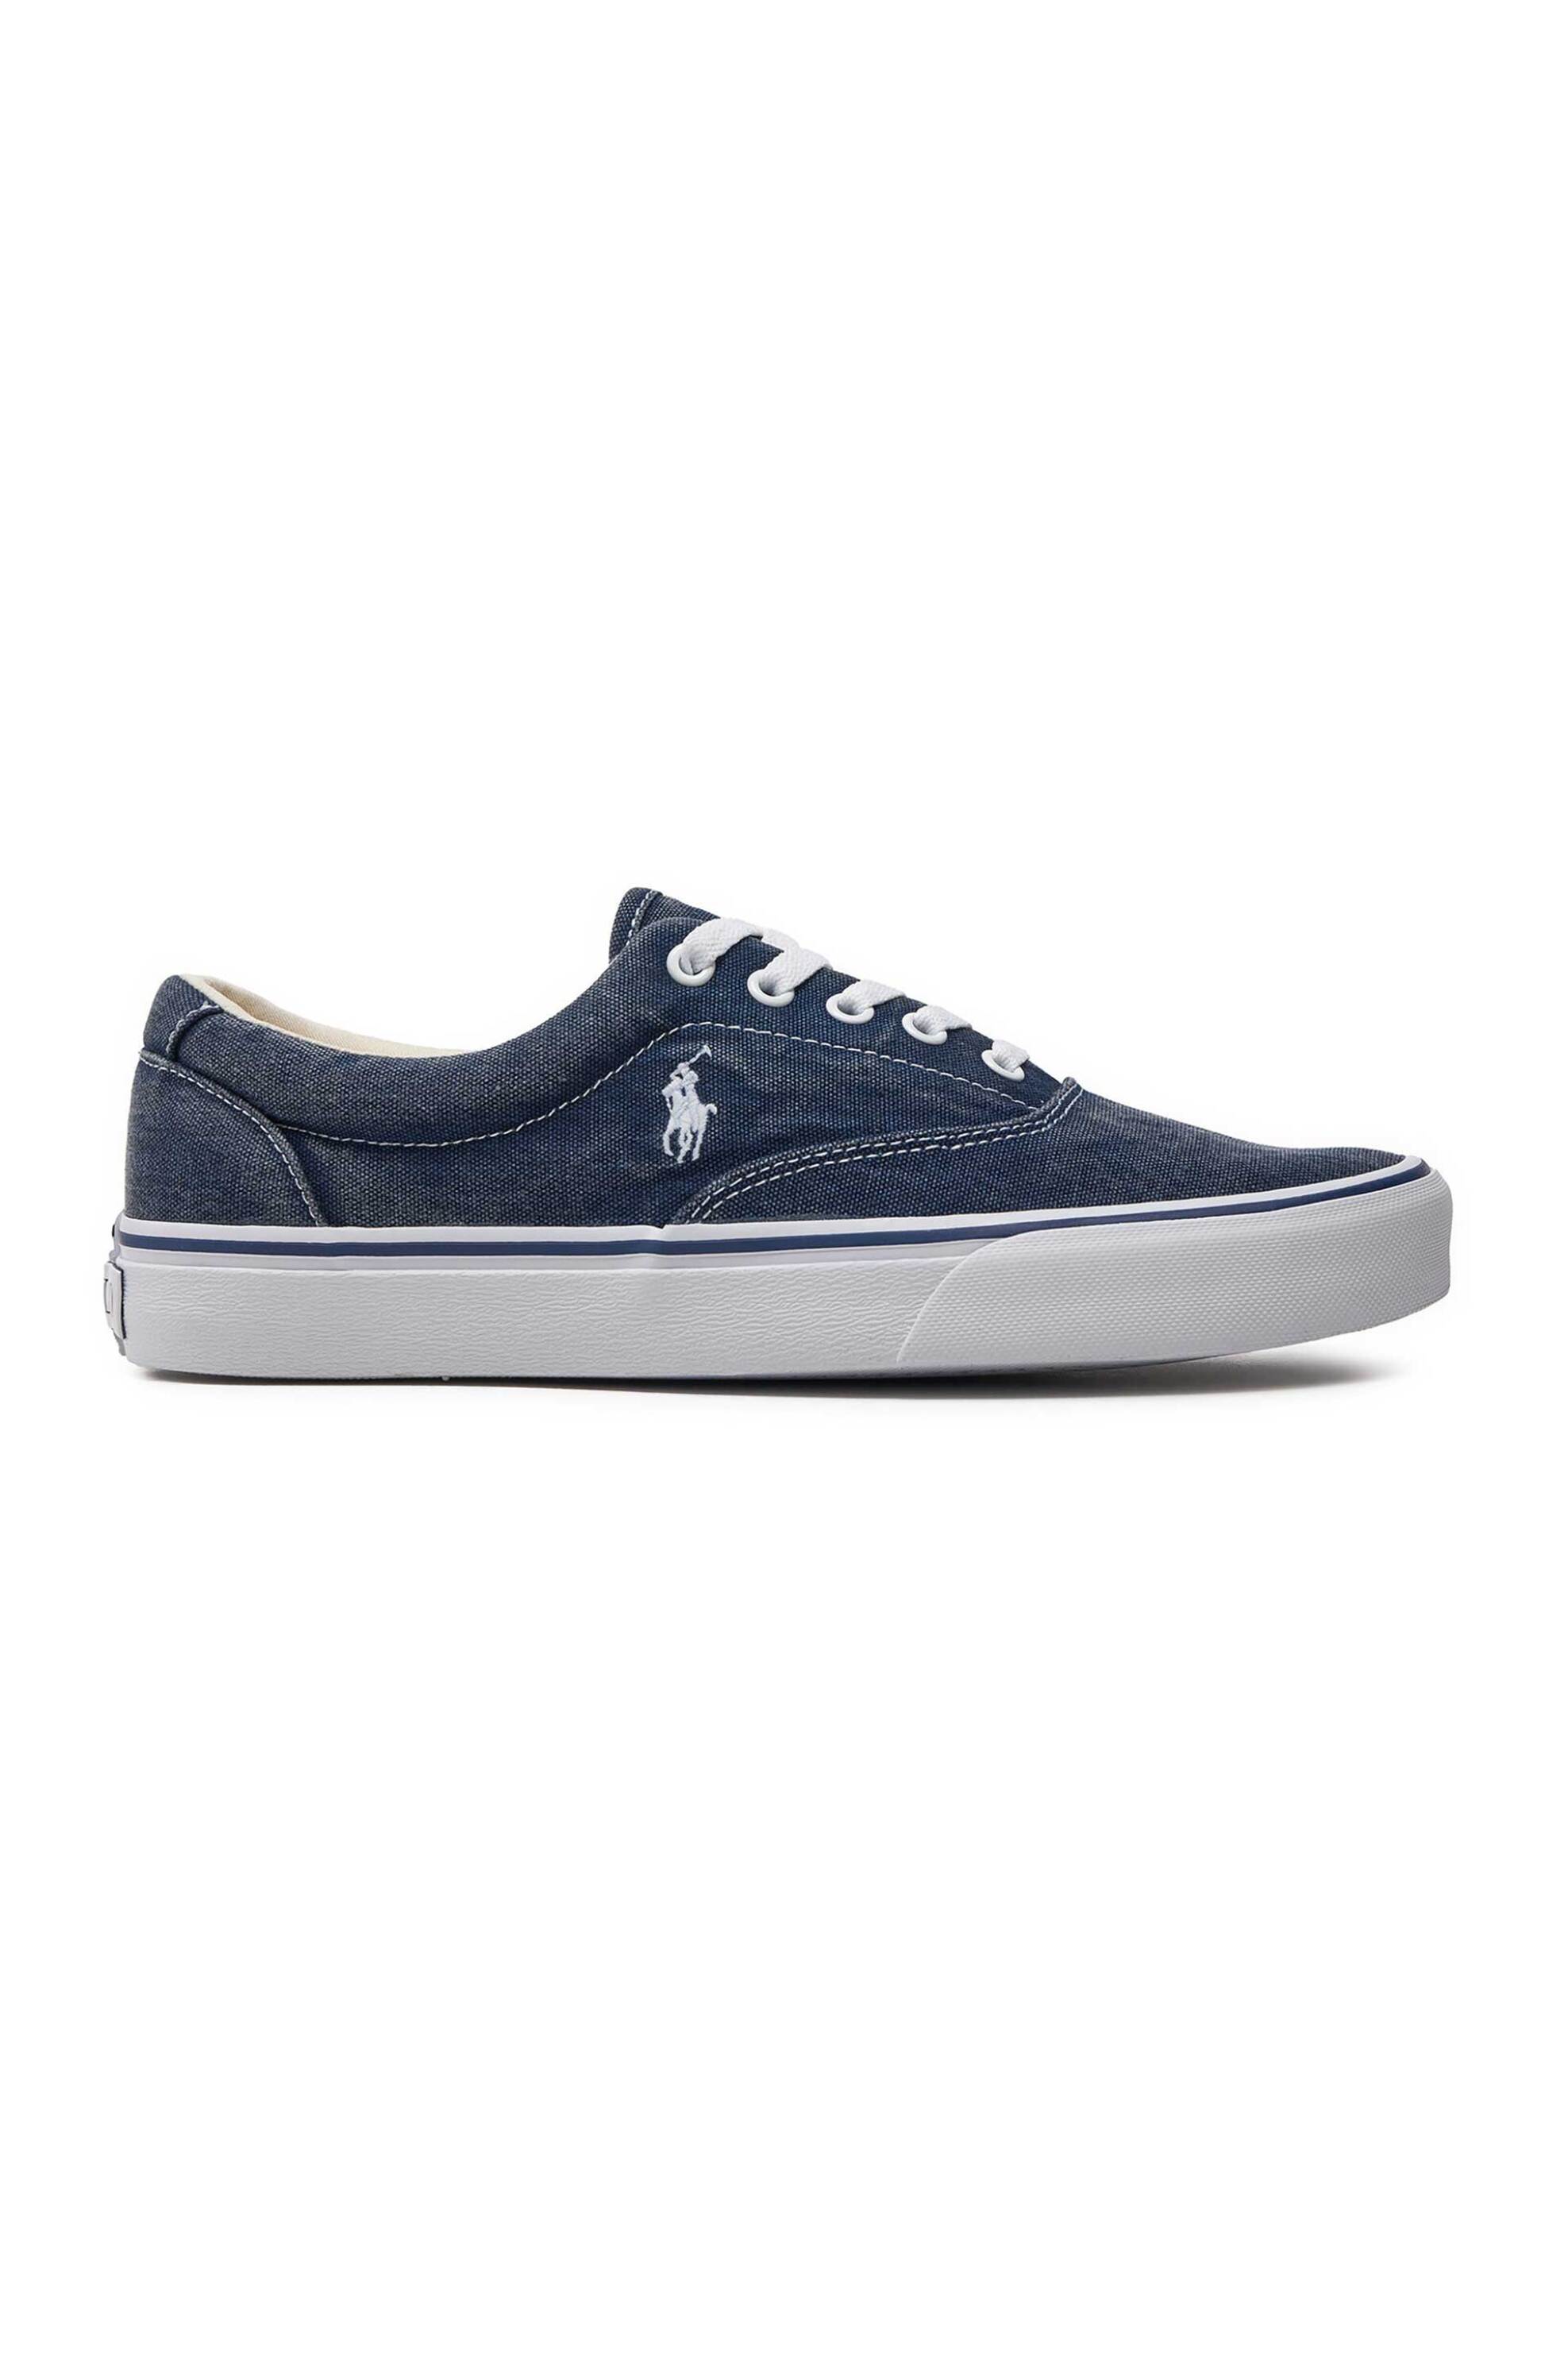 Ανδρική Μόδα > Ανδρικά Παπούτσια > Ανδρικά Sneakers Polo Ralph Lauren ανδρικά canvas sneakers με λογότυπο - 816932174001 Μπλε Σκούρο